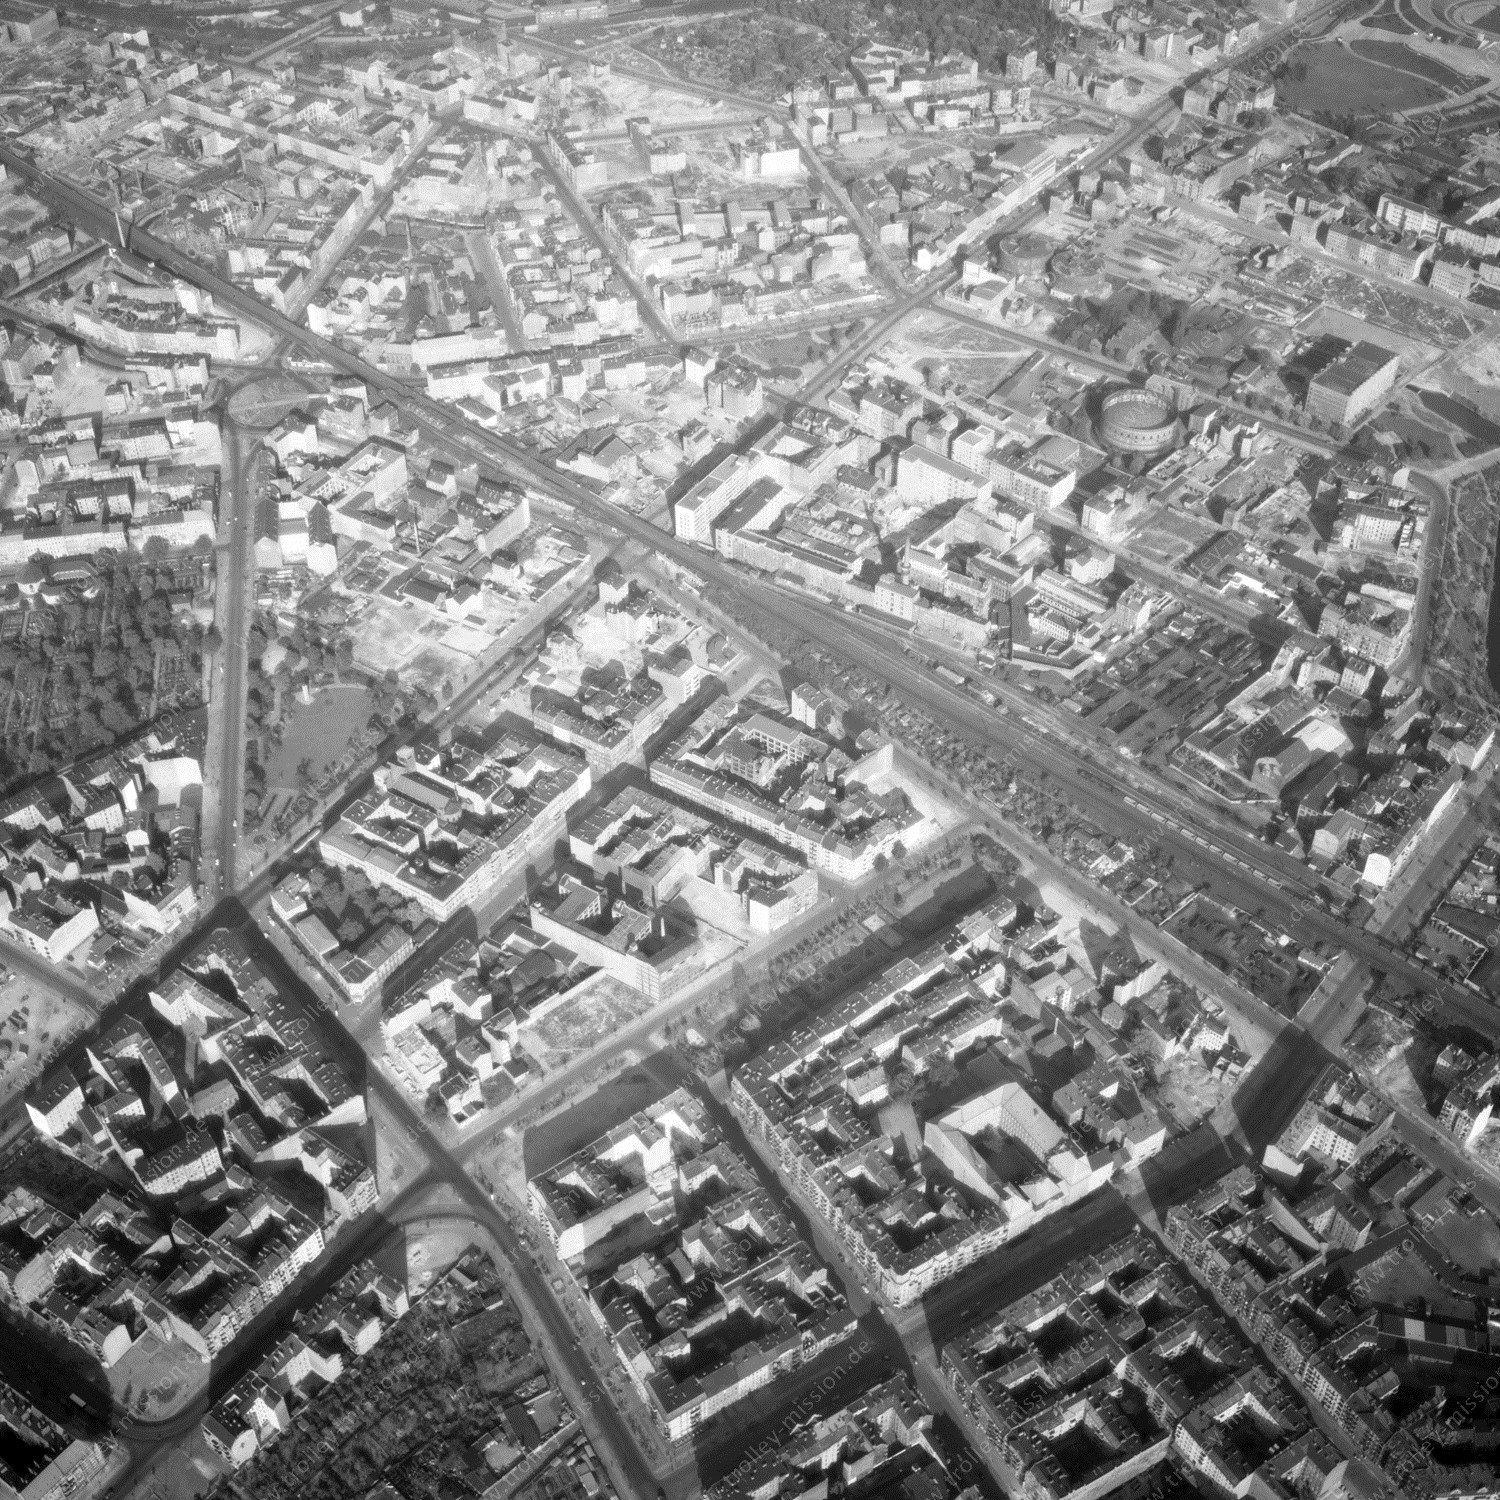 Alte Fotos und Luftbilder von Berlin - Luftbildaufnahme Nr. 07 - Historische Luftaufnahmen von West-Berlin aus dem Jahr 1954 - Flugstrecke Papa